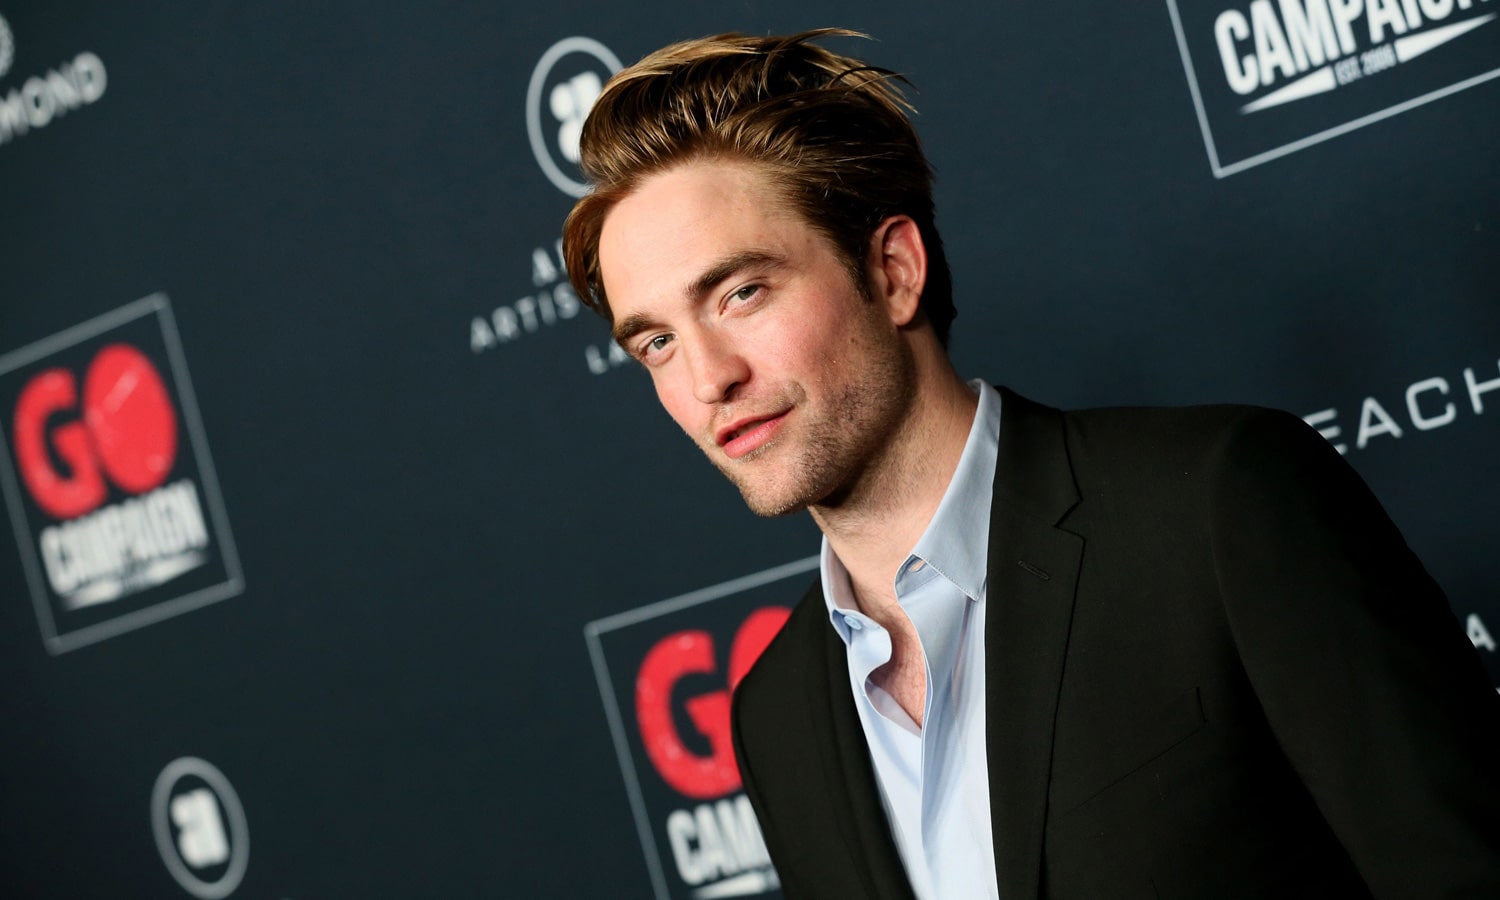 Does Robert Pattinson Smoke Weed?